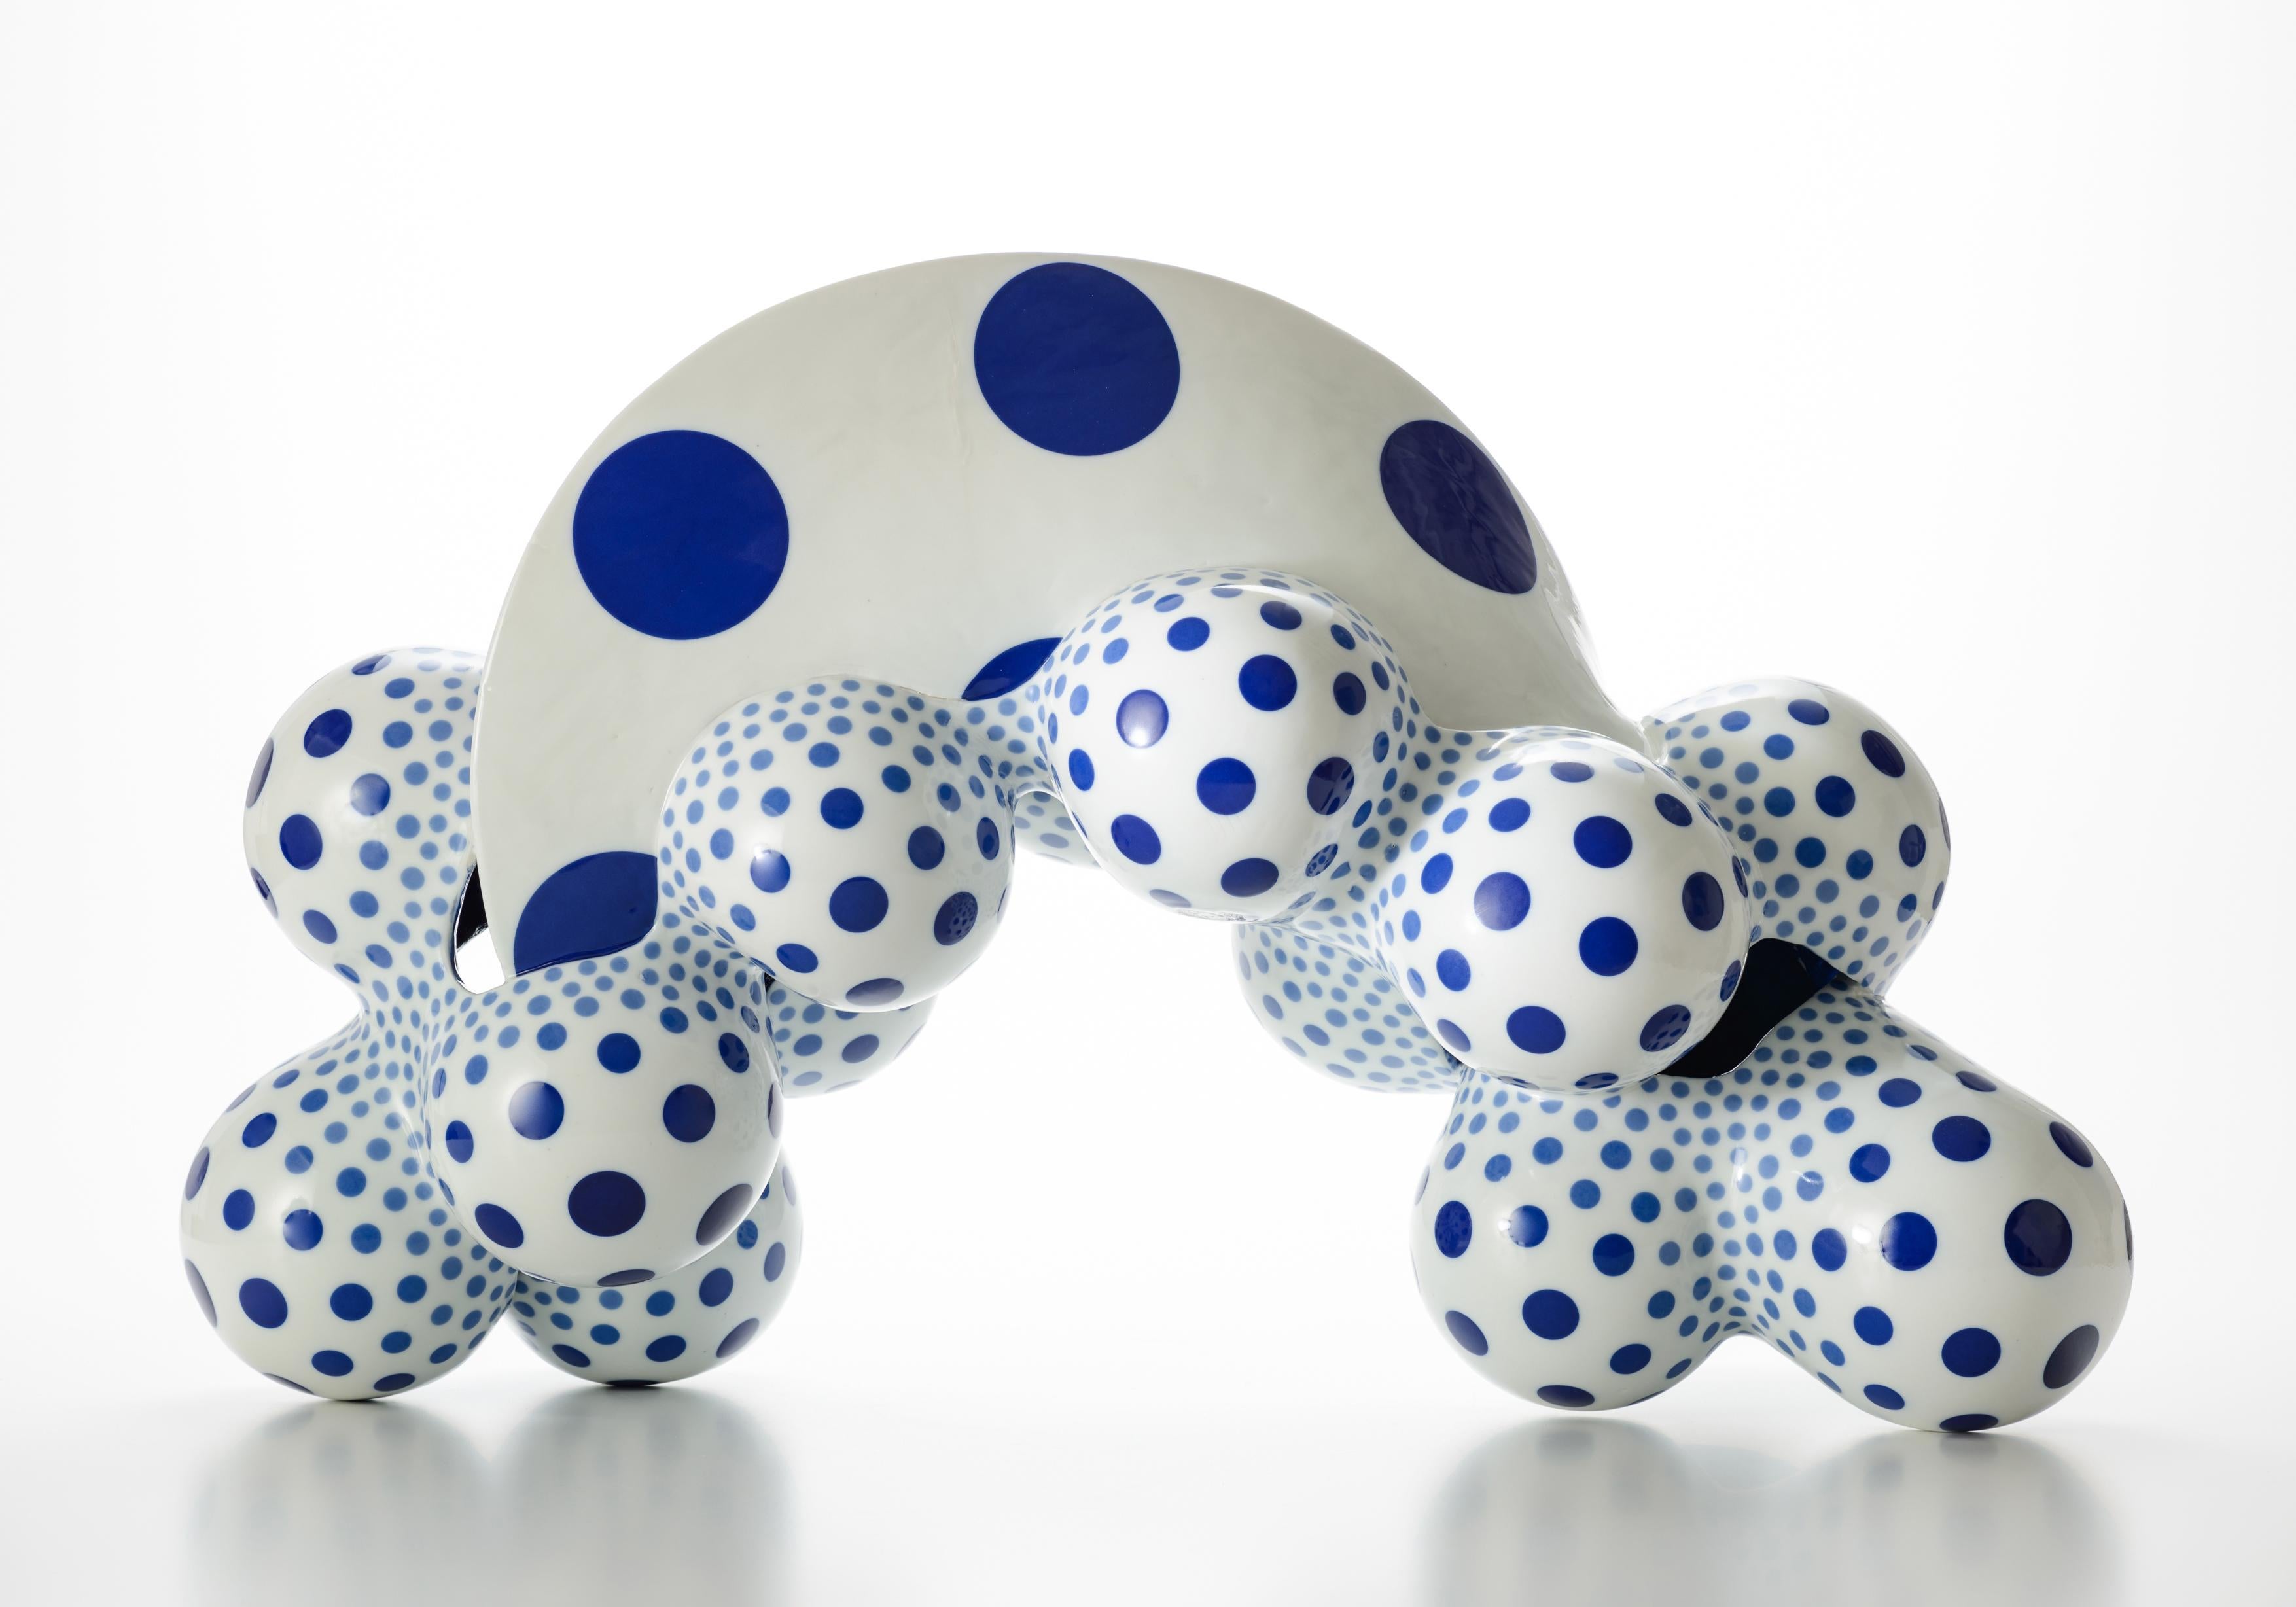 L'artiste japonais Harumi Nakashima crée des sculptures en céramique de forme libre qui présentent des caractéristiques à la fois organiques et psychédéliques. Nakashima, surtout connu pour ses formes géométriques bizarres magnifiquement structurées